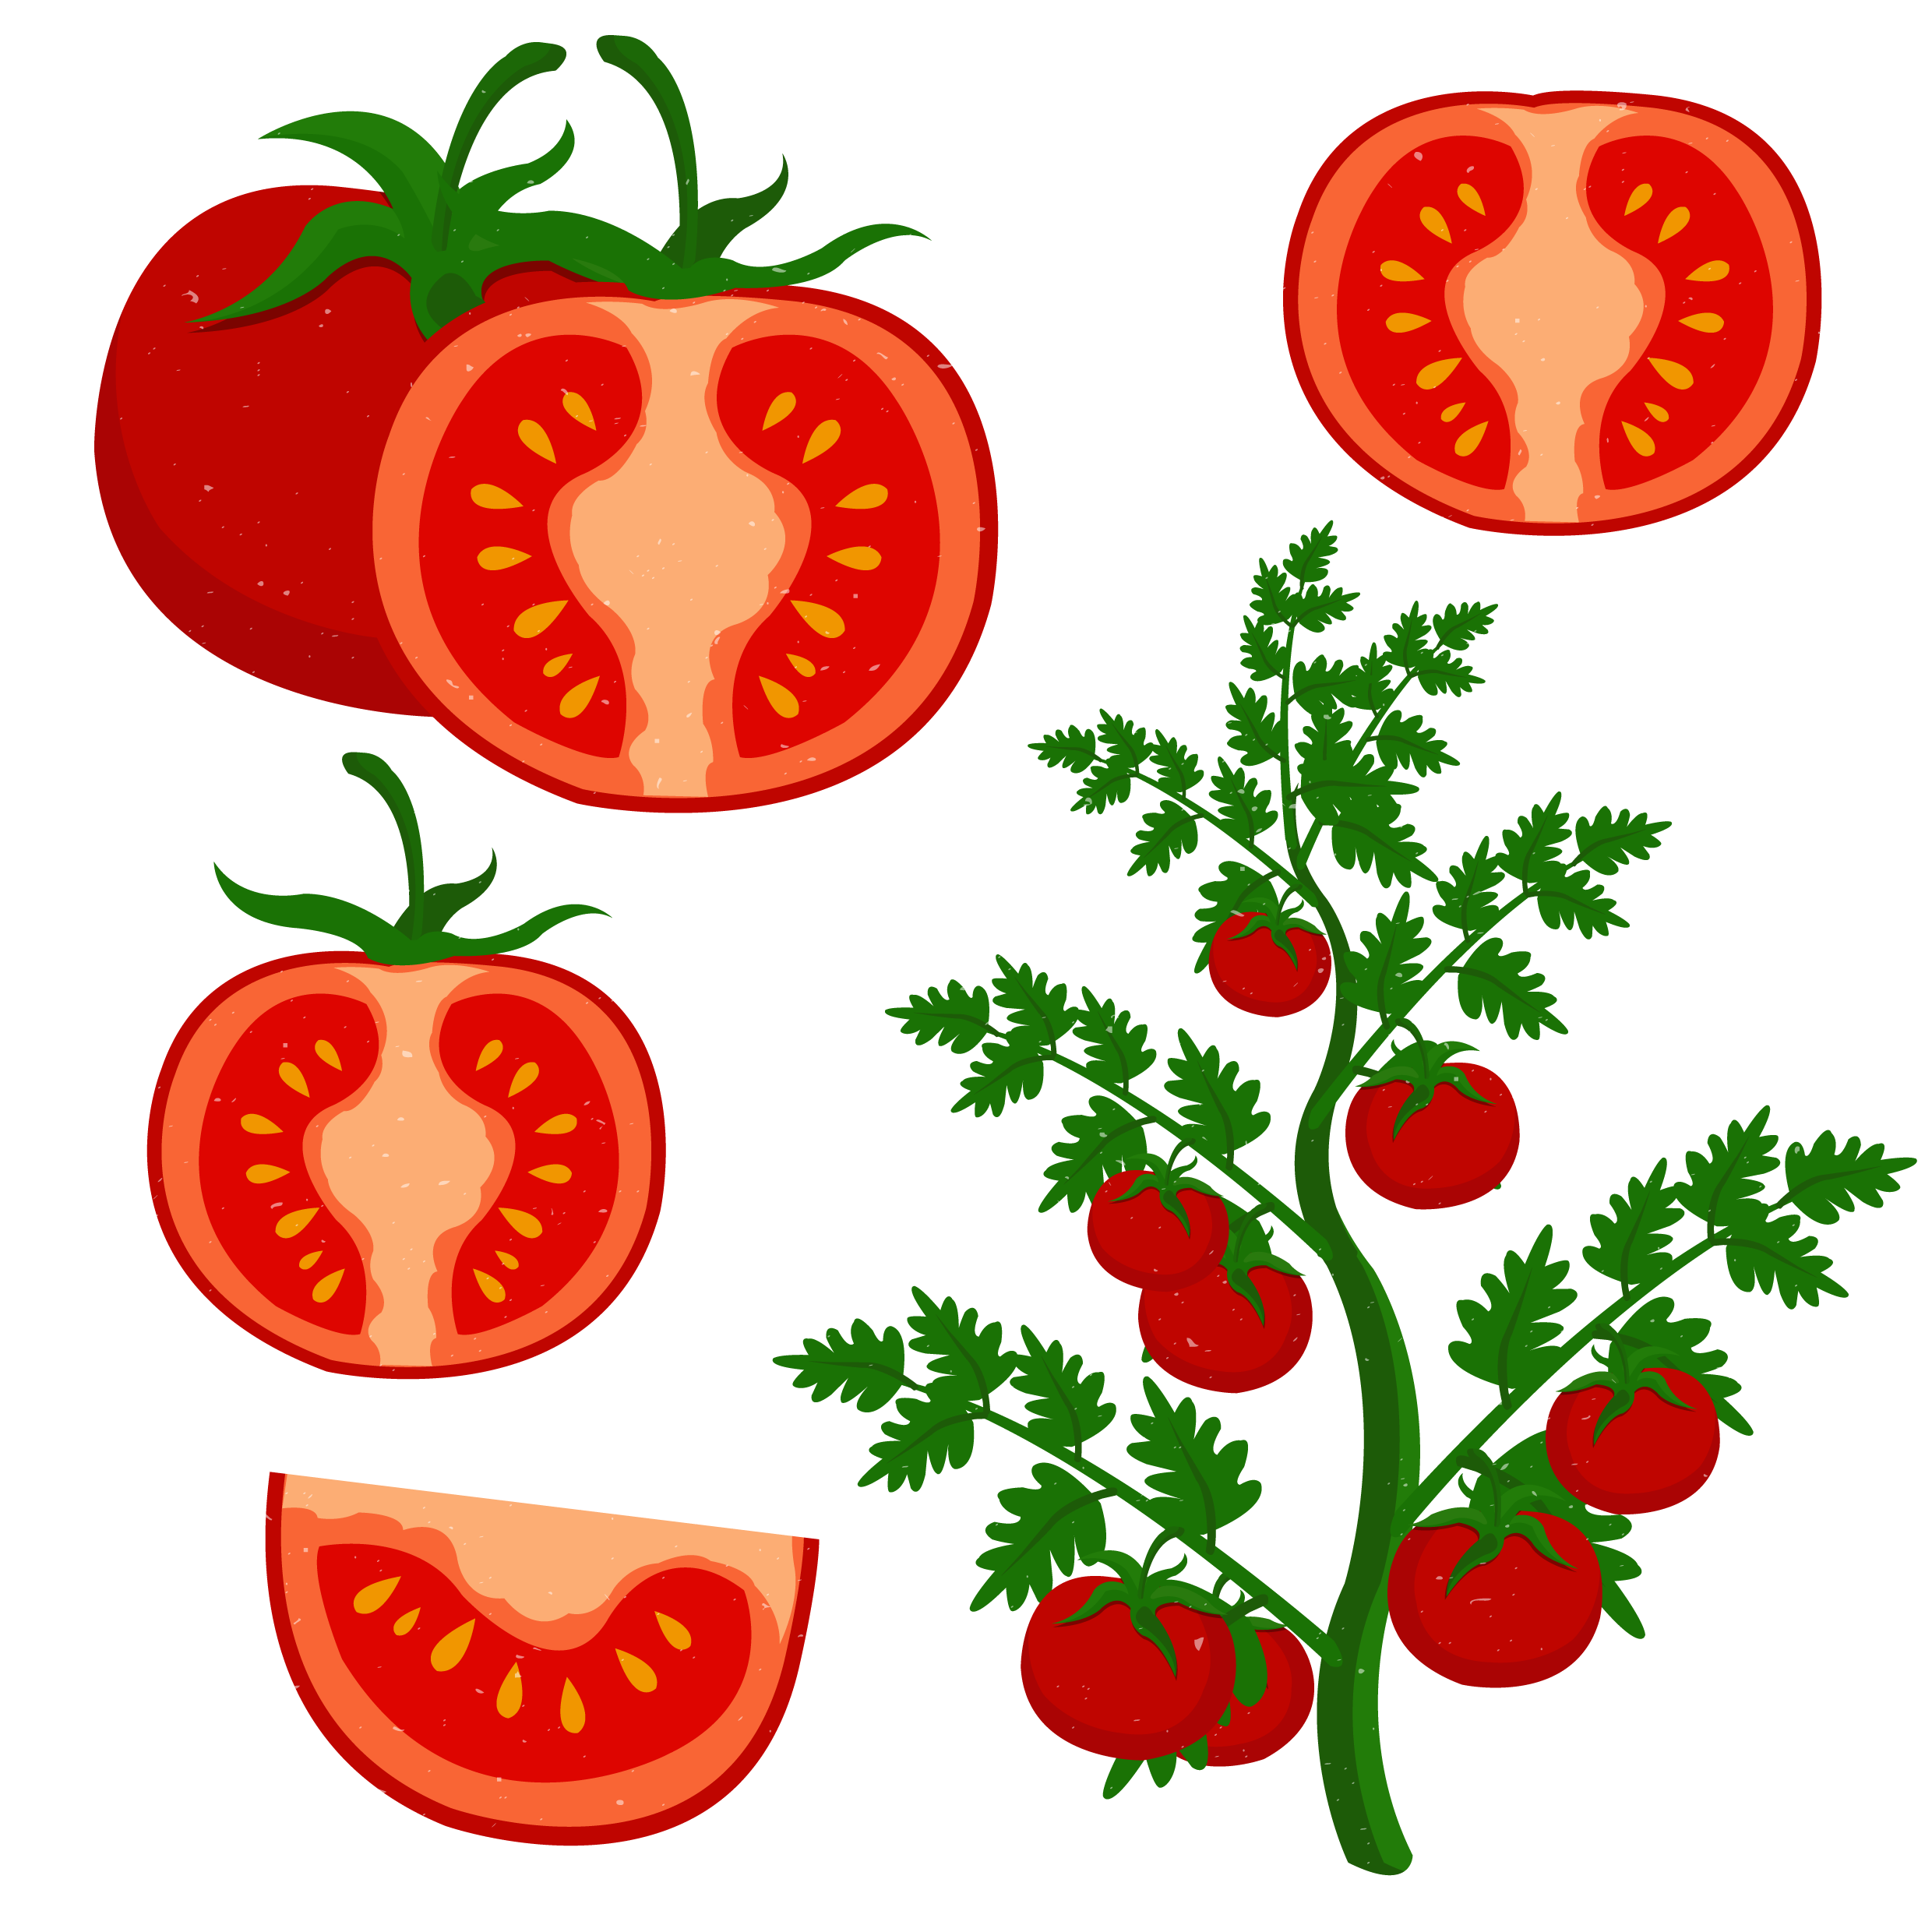 تصویر گوجه فرنگی های قرمز درشت با فرمت PNG پی ان جی